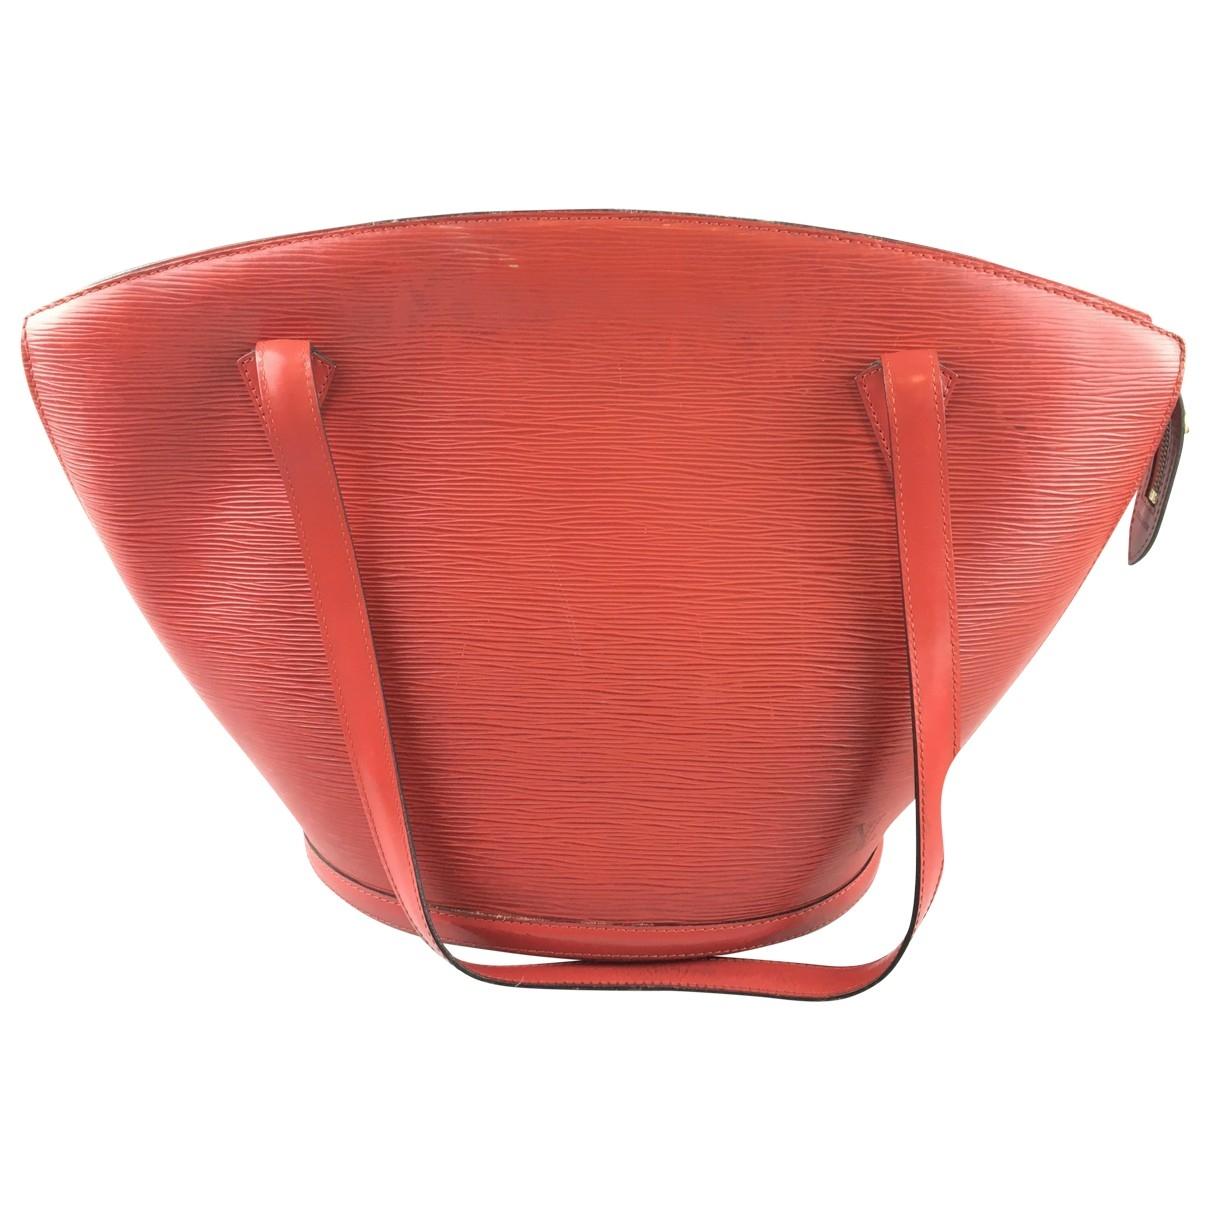 Lyst - Louis Vuitton St Jacques Leather Handbag in Orange